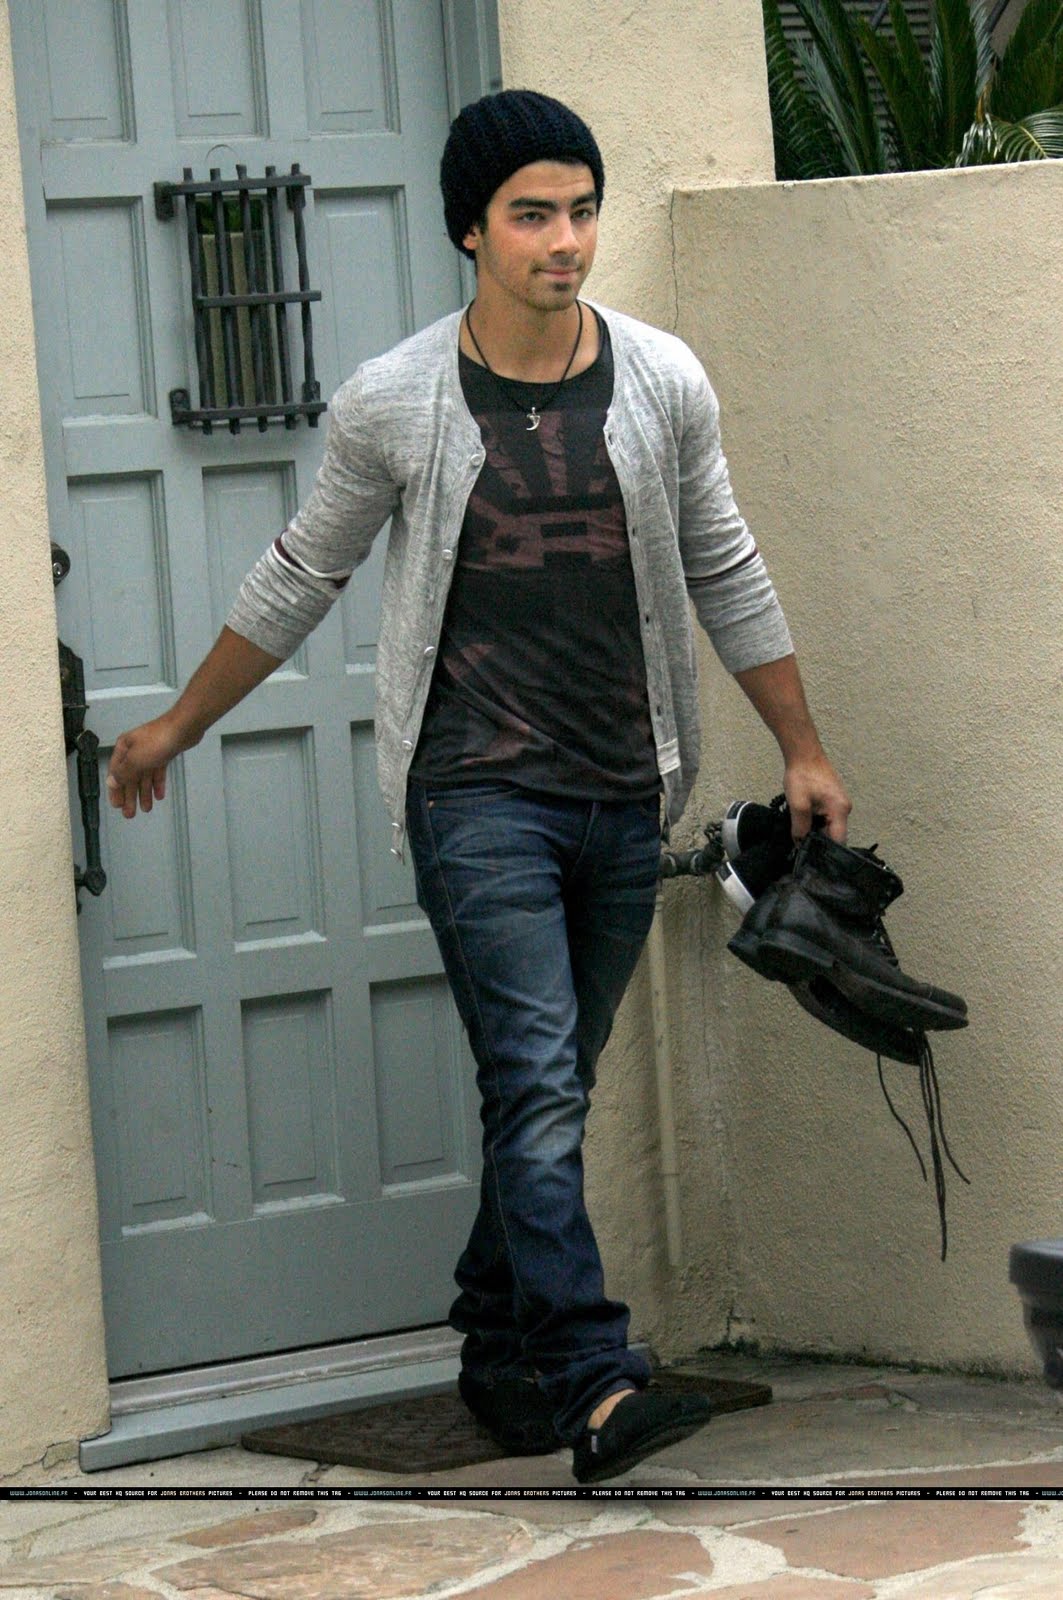 The Jonas Blog: Joe saliendo de su casa.